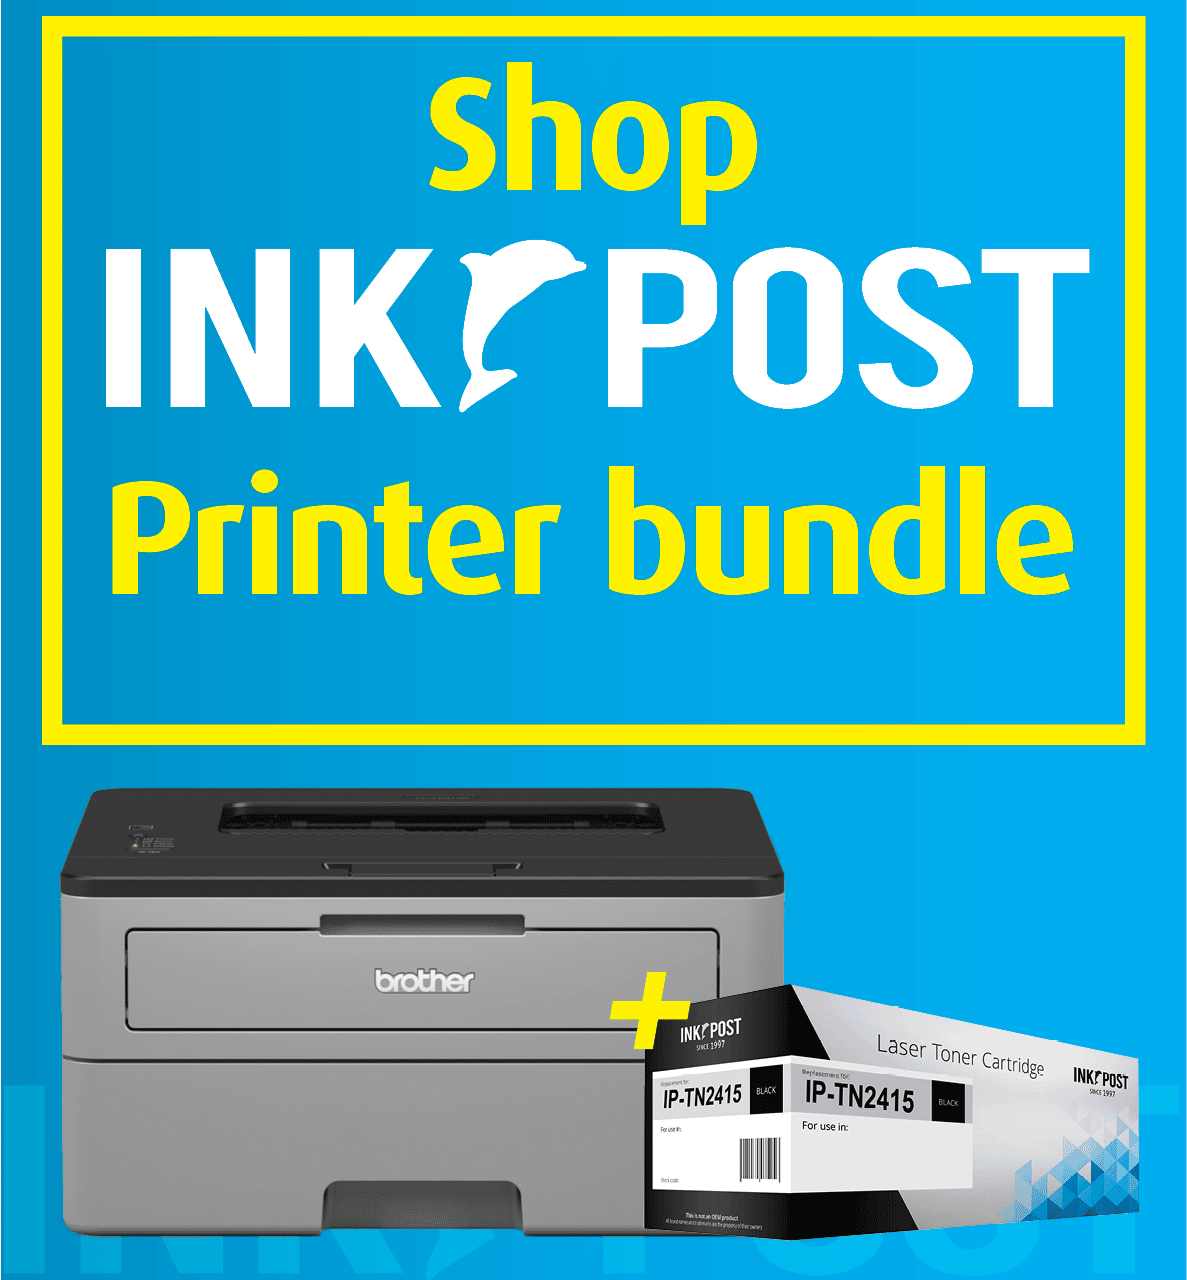 InkPost printer bundle